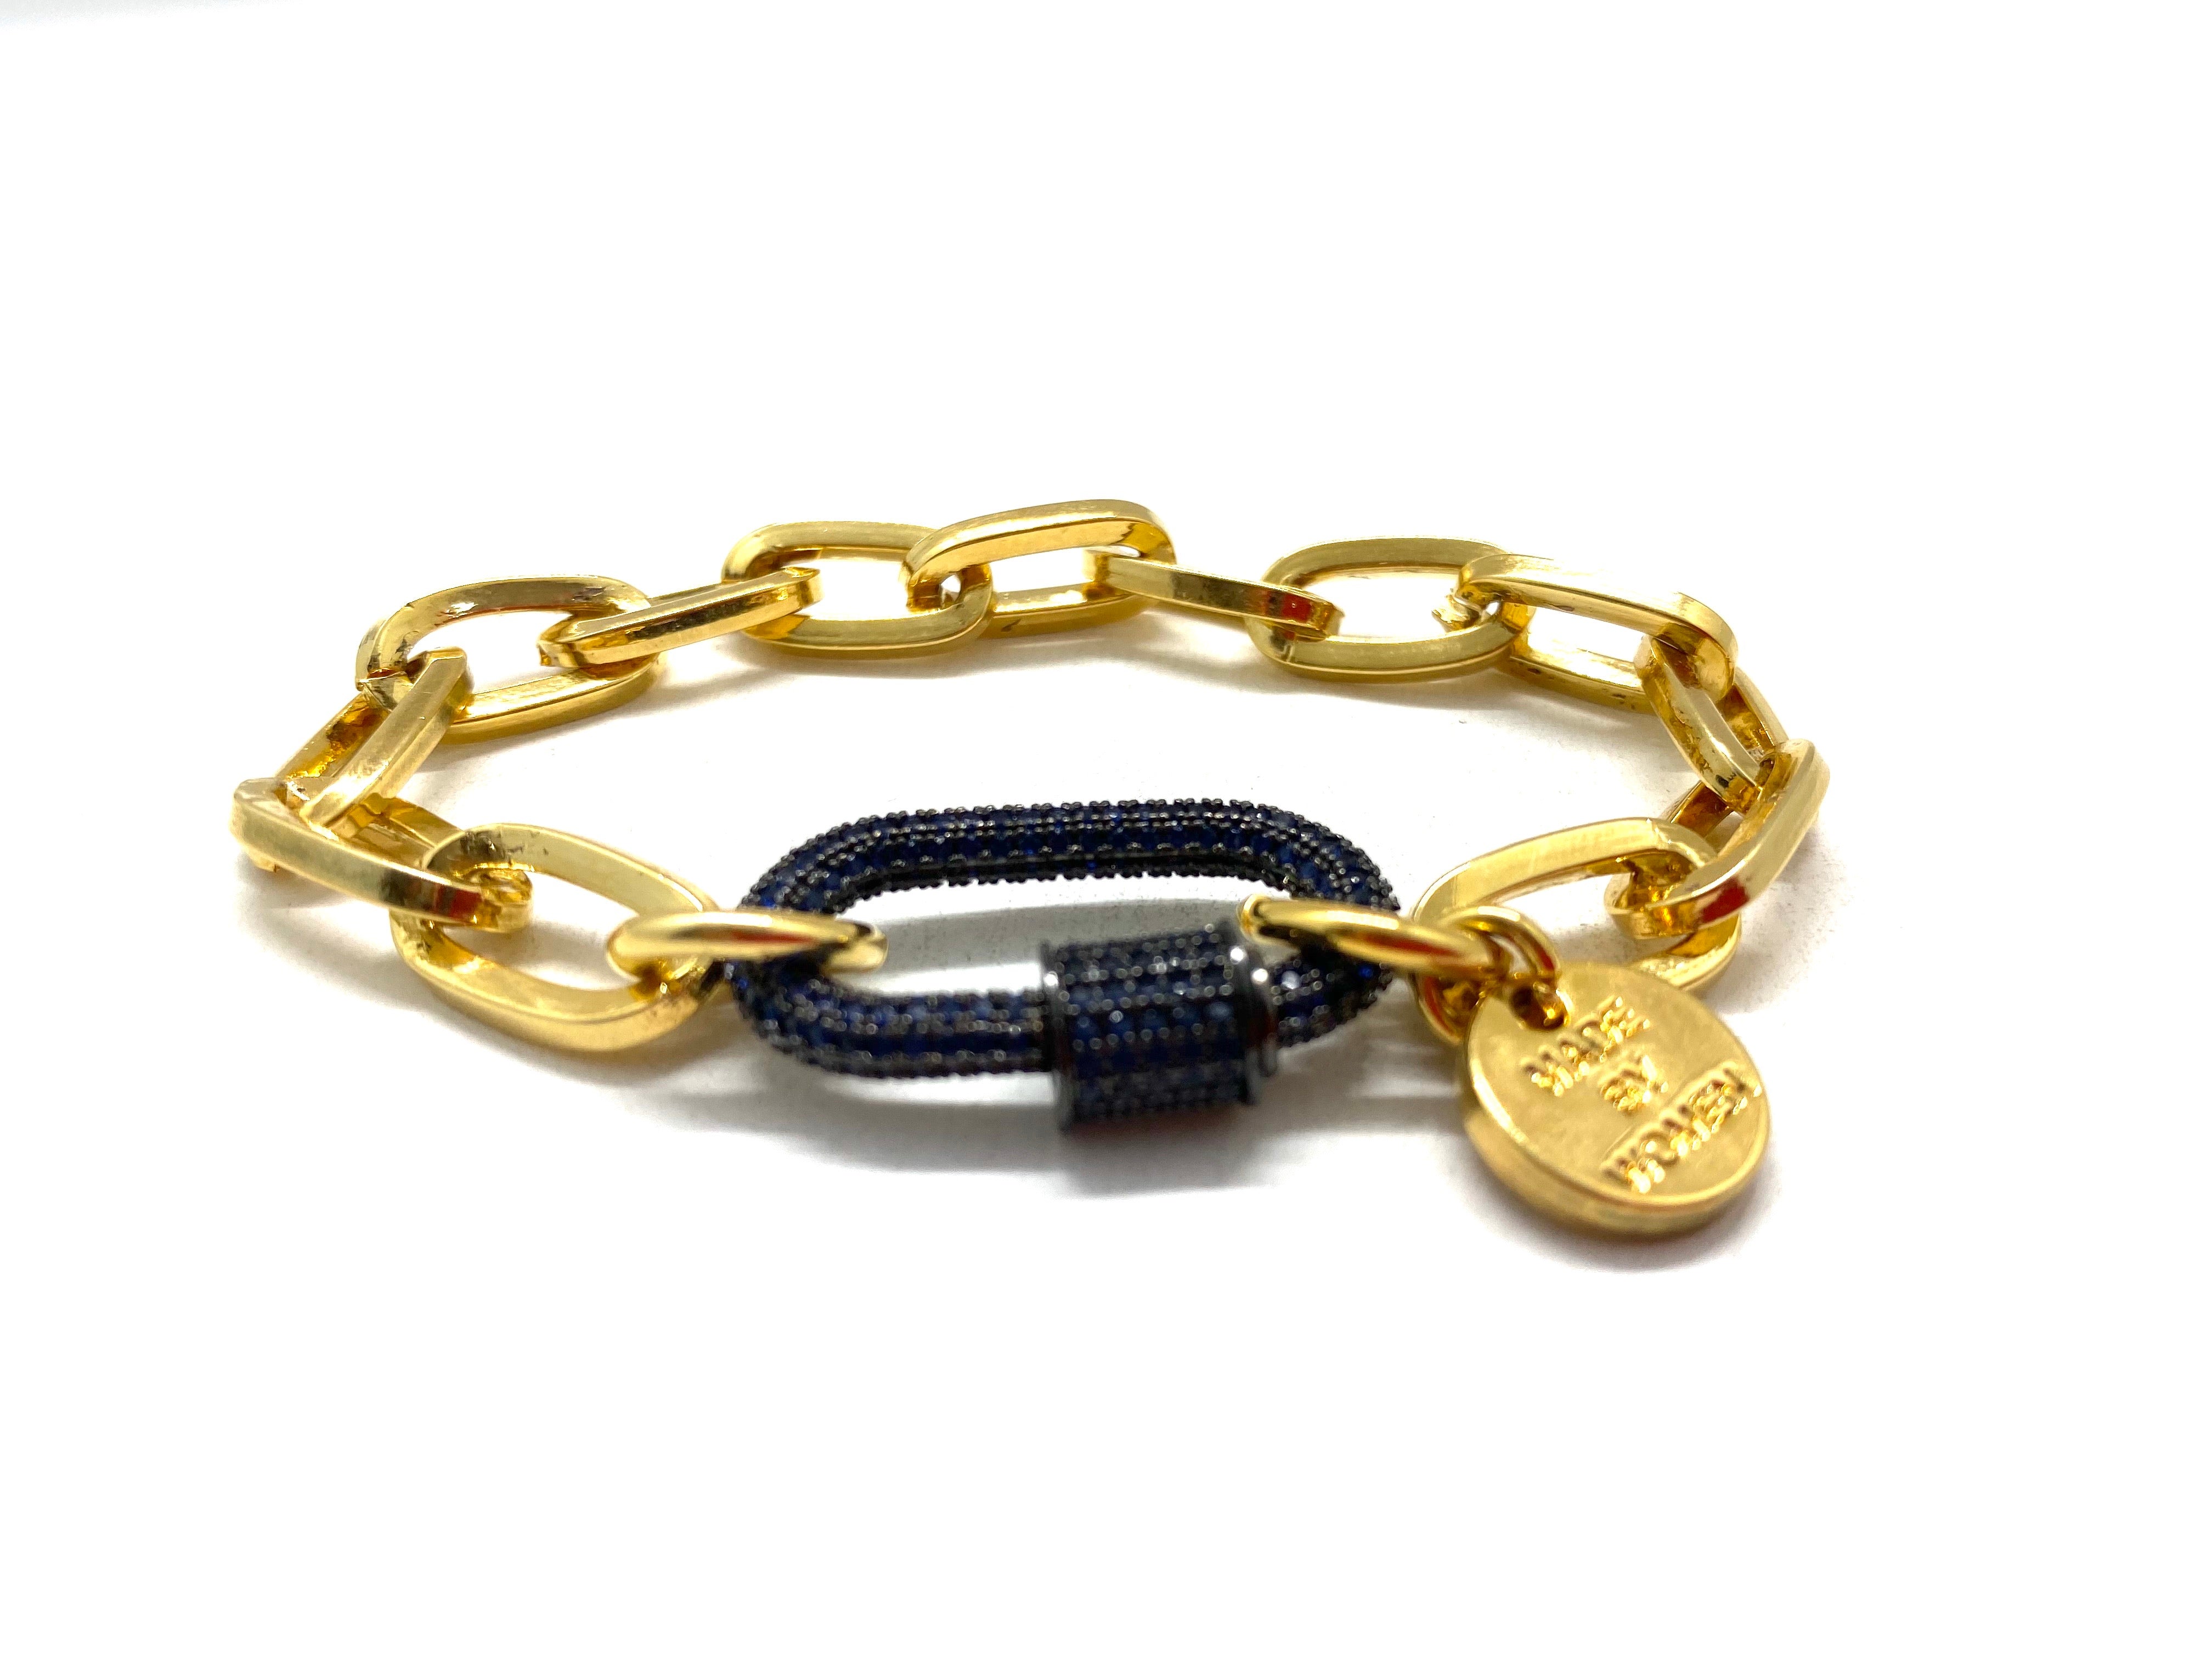 Gold chain dark blue zirconia studded hardware link.